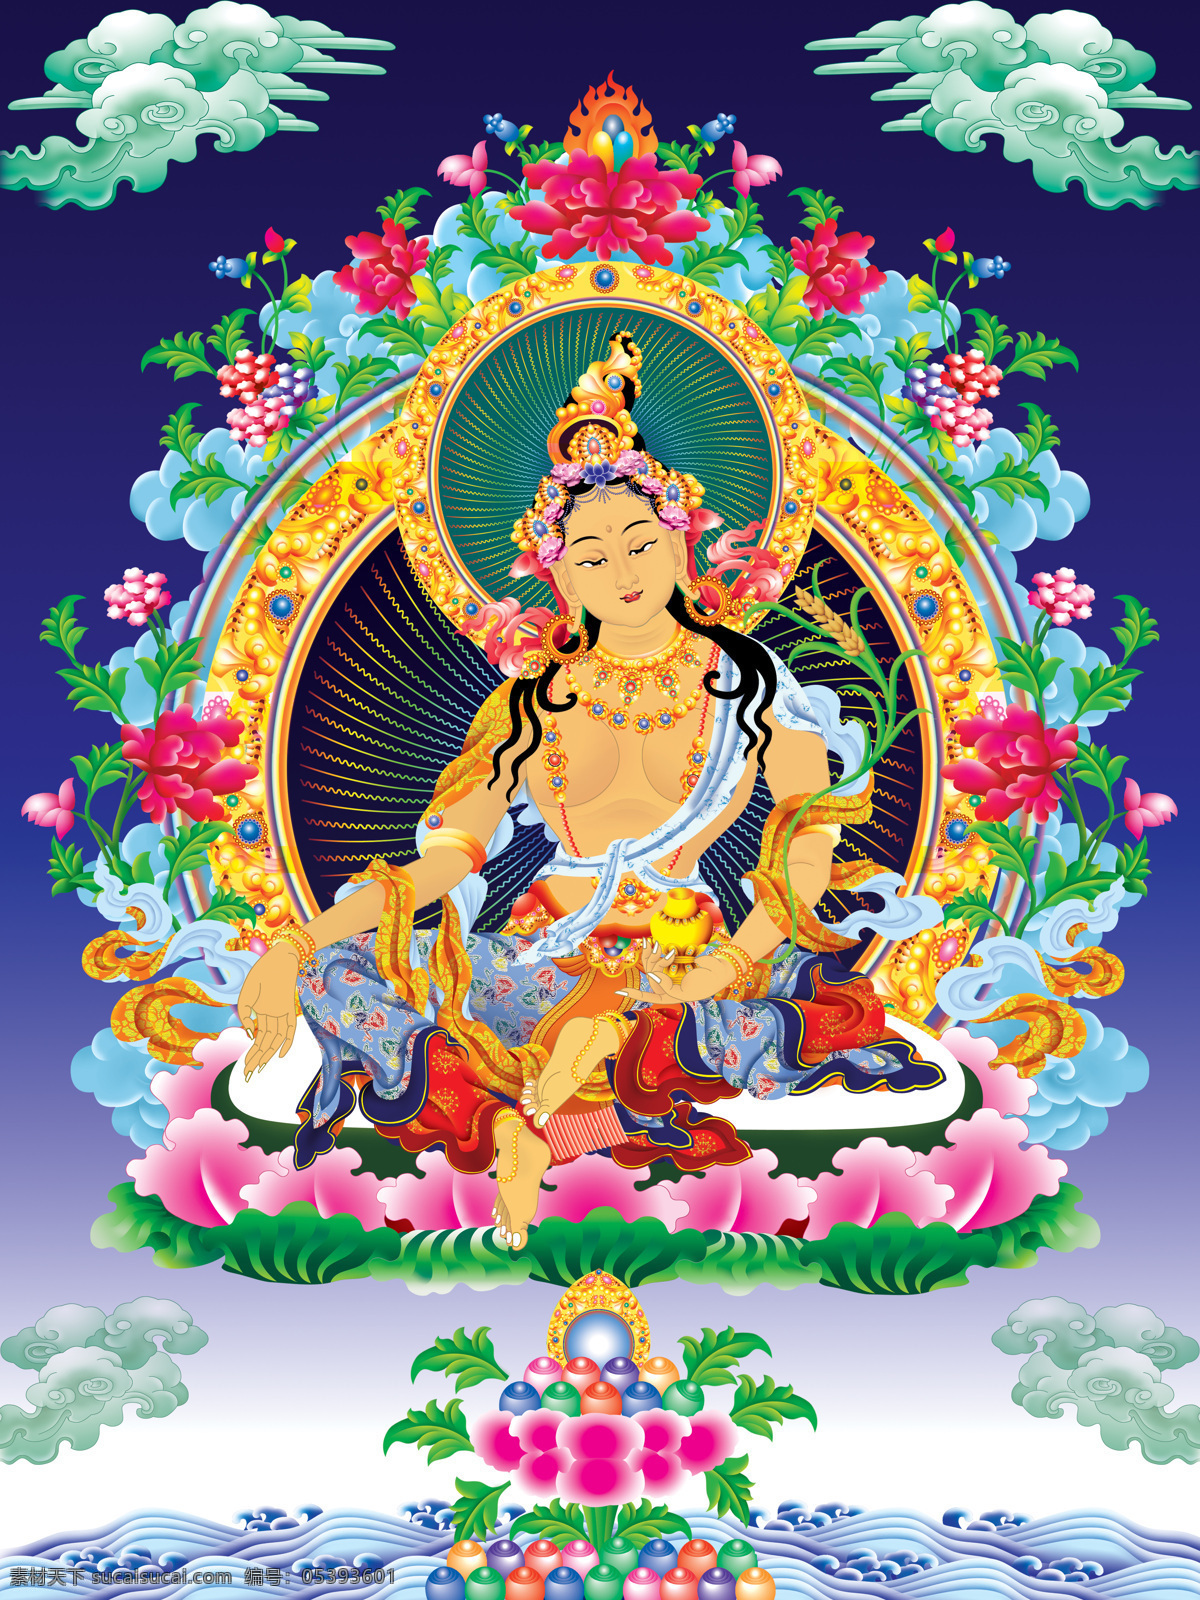 阿弥陀佛 佛教 佛教图片 佛像 菩萨 唐卡 文化艺术 财源佛母 西藏 密宗 西方三圣 佛菩萨 宗教信仰